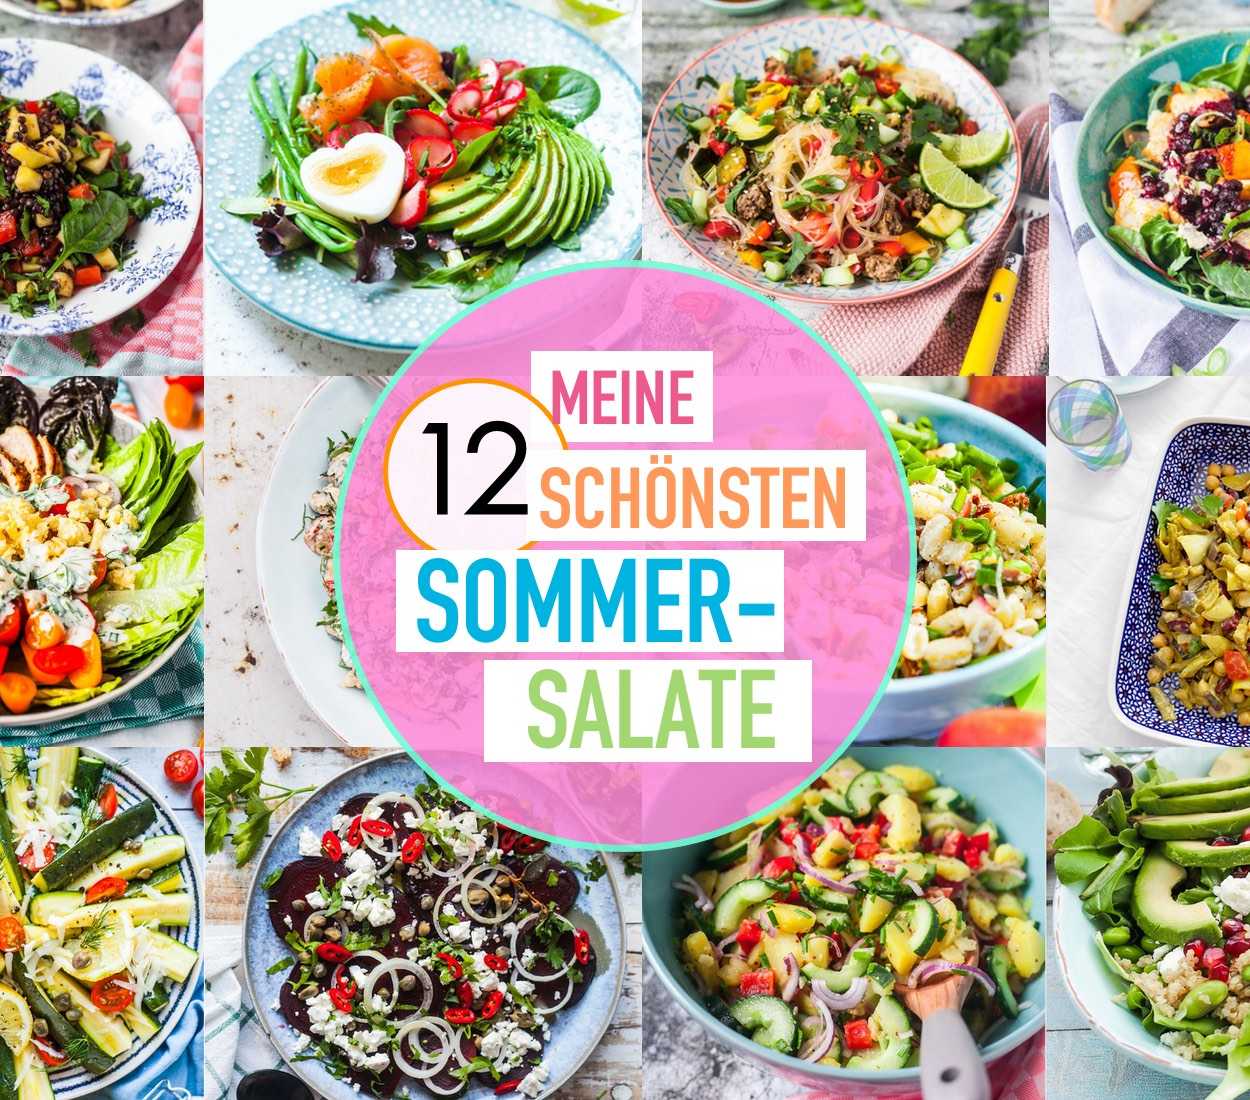 Meine 12 schönsten Sommersalate | FoxyFood.de